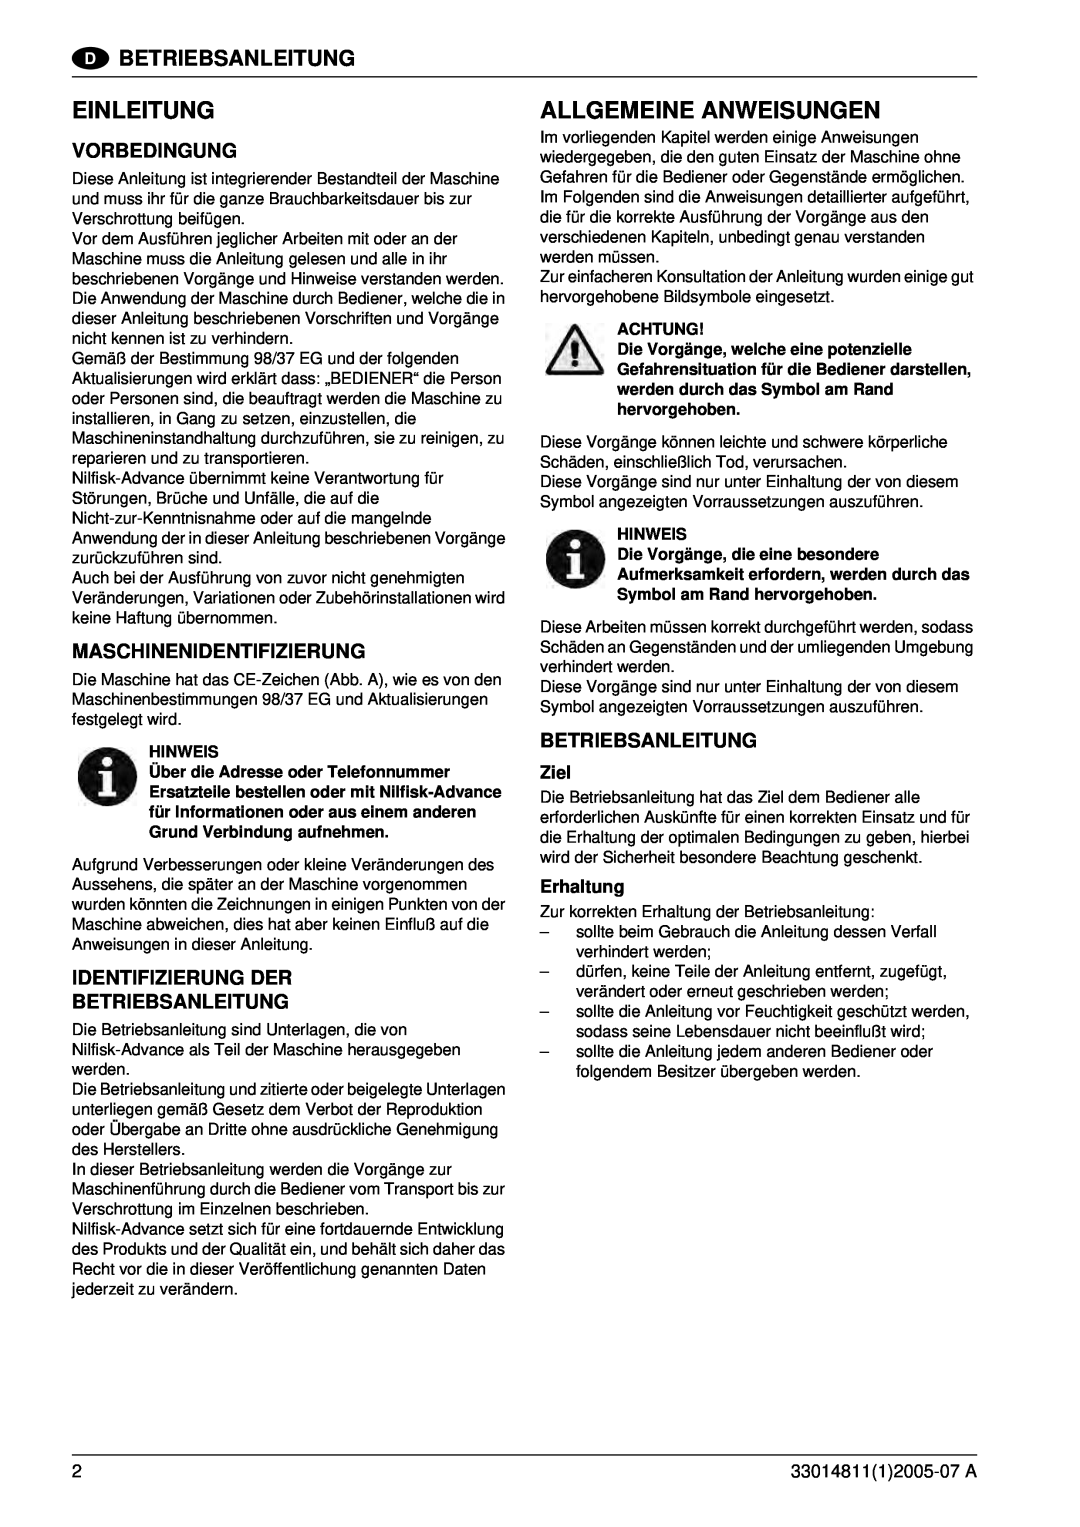 Nilfisk-ALTO SR 1450 B-D Einleitung, Allgemeine Anweisungen, Betriebsanleitung, Vorbedingung, Maschinenidentifizierung 